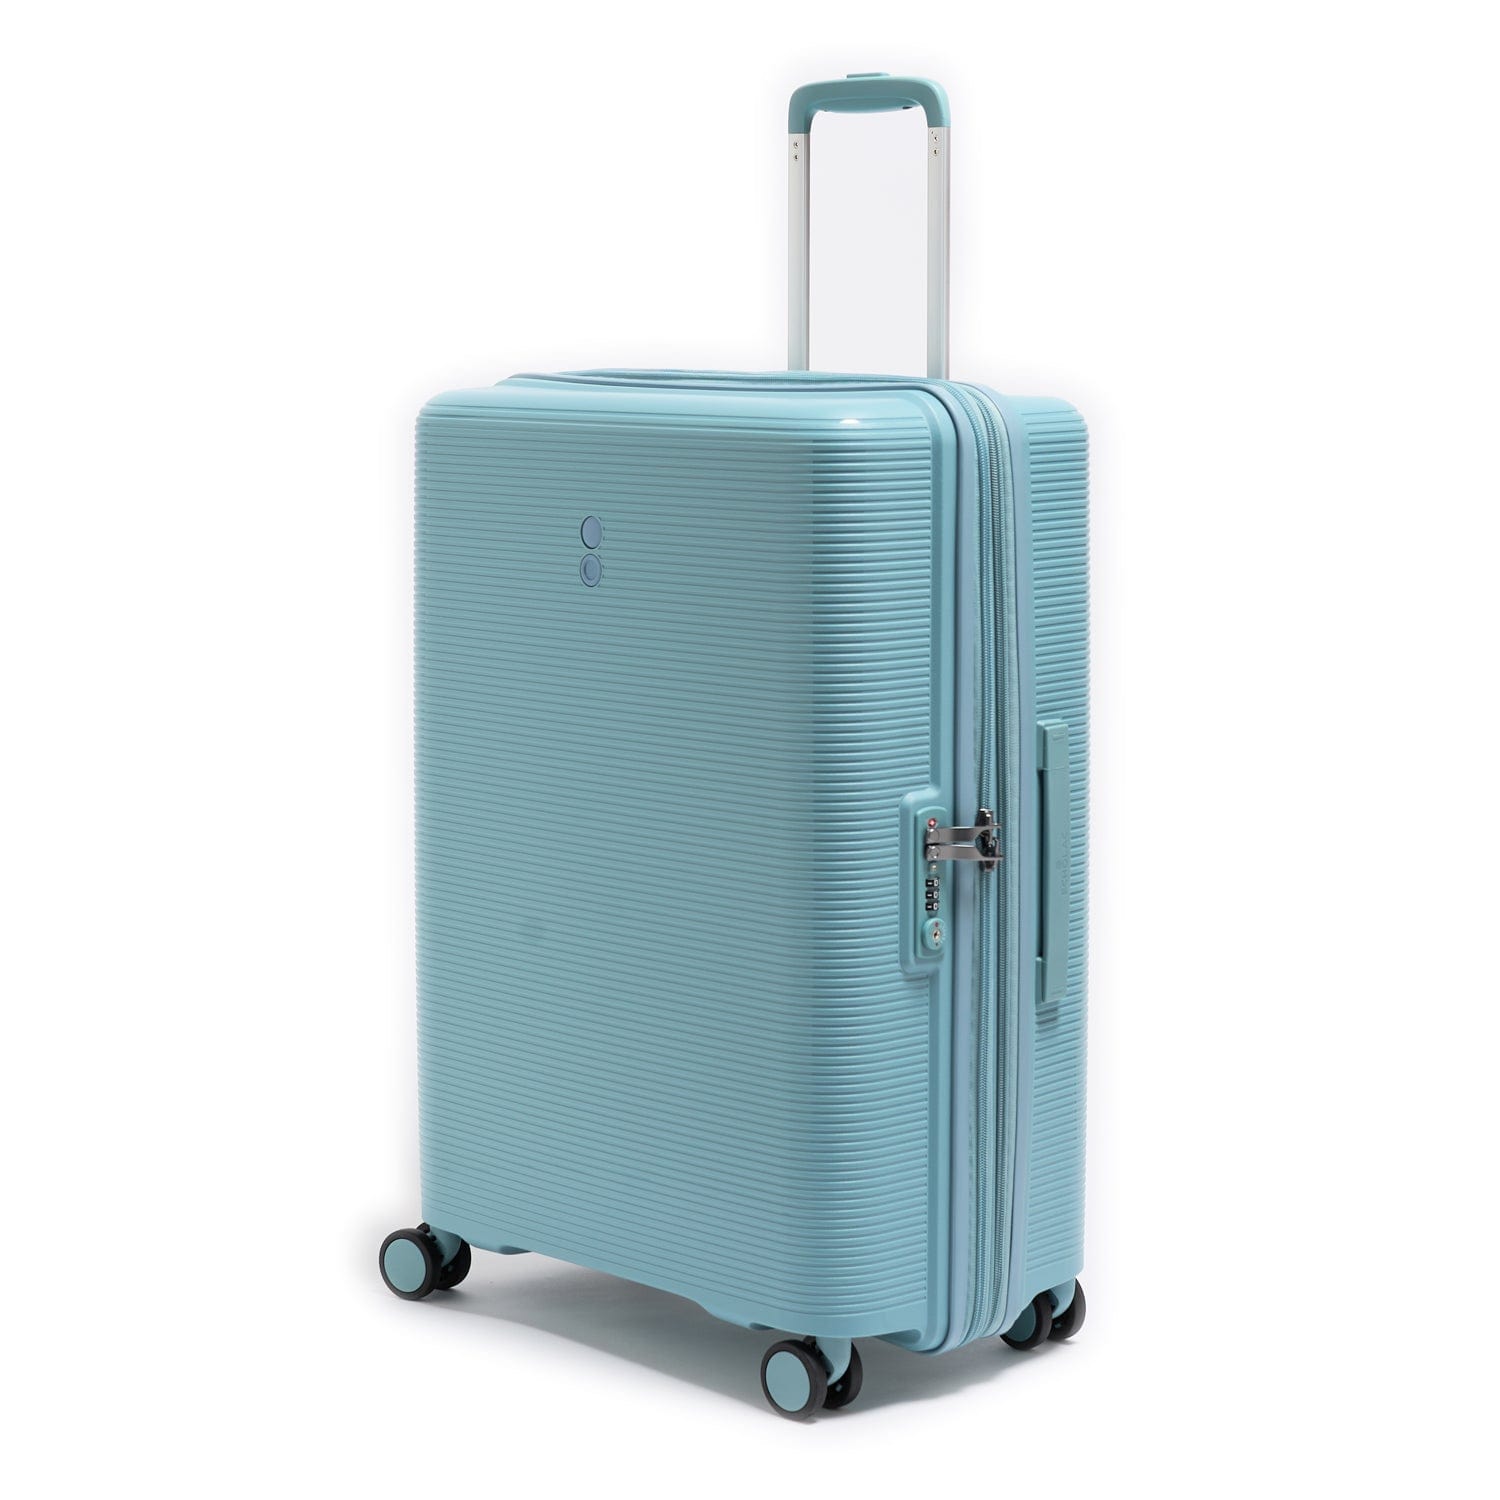 Echolac Forza 75cm Hardcase Expandable 4 Double Wheel Cabin Luggage Trolley Coastal Blue - PW005 28 Coastal Blue